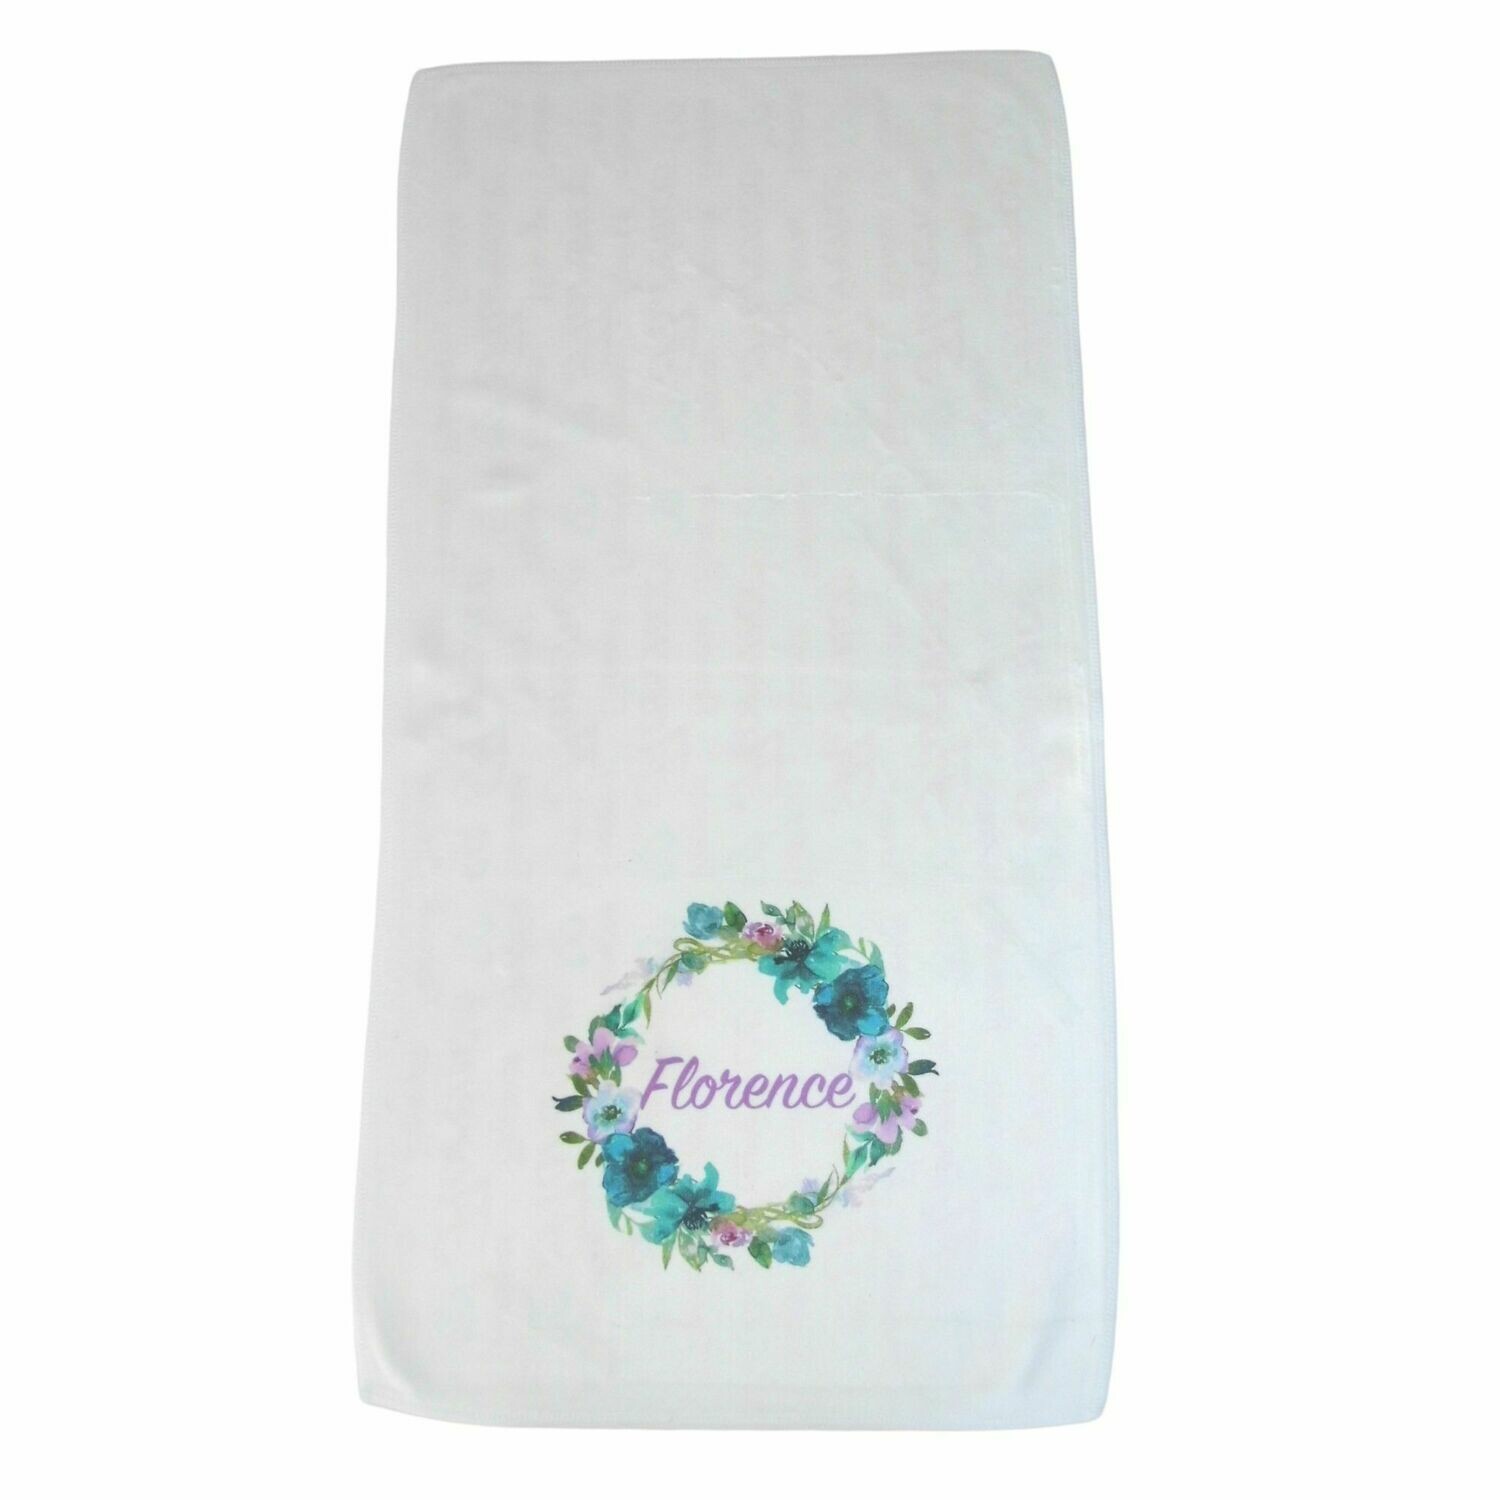 Personalised Baby Blanket - Floral Binki, Dribble Cloth